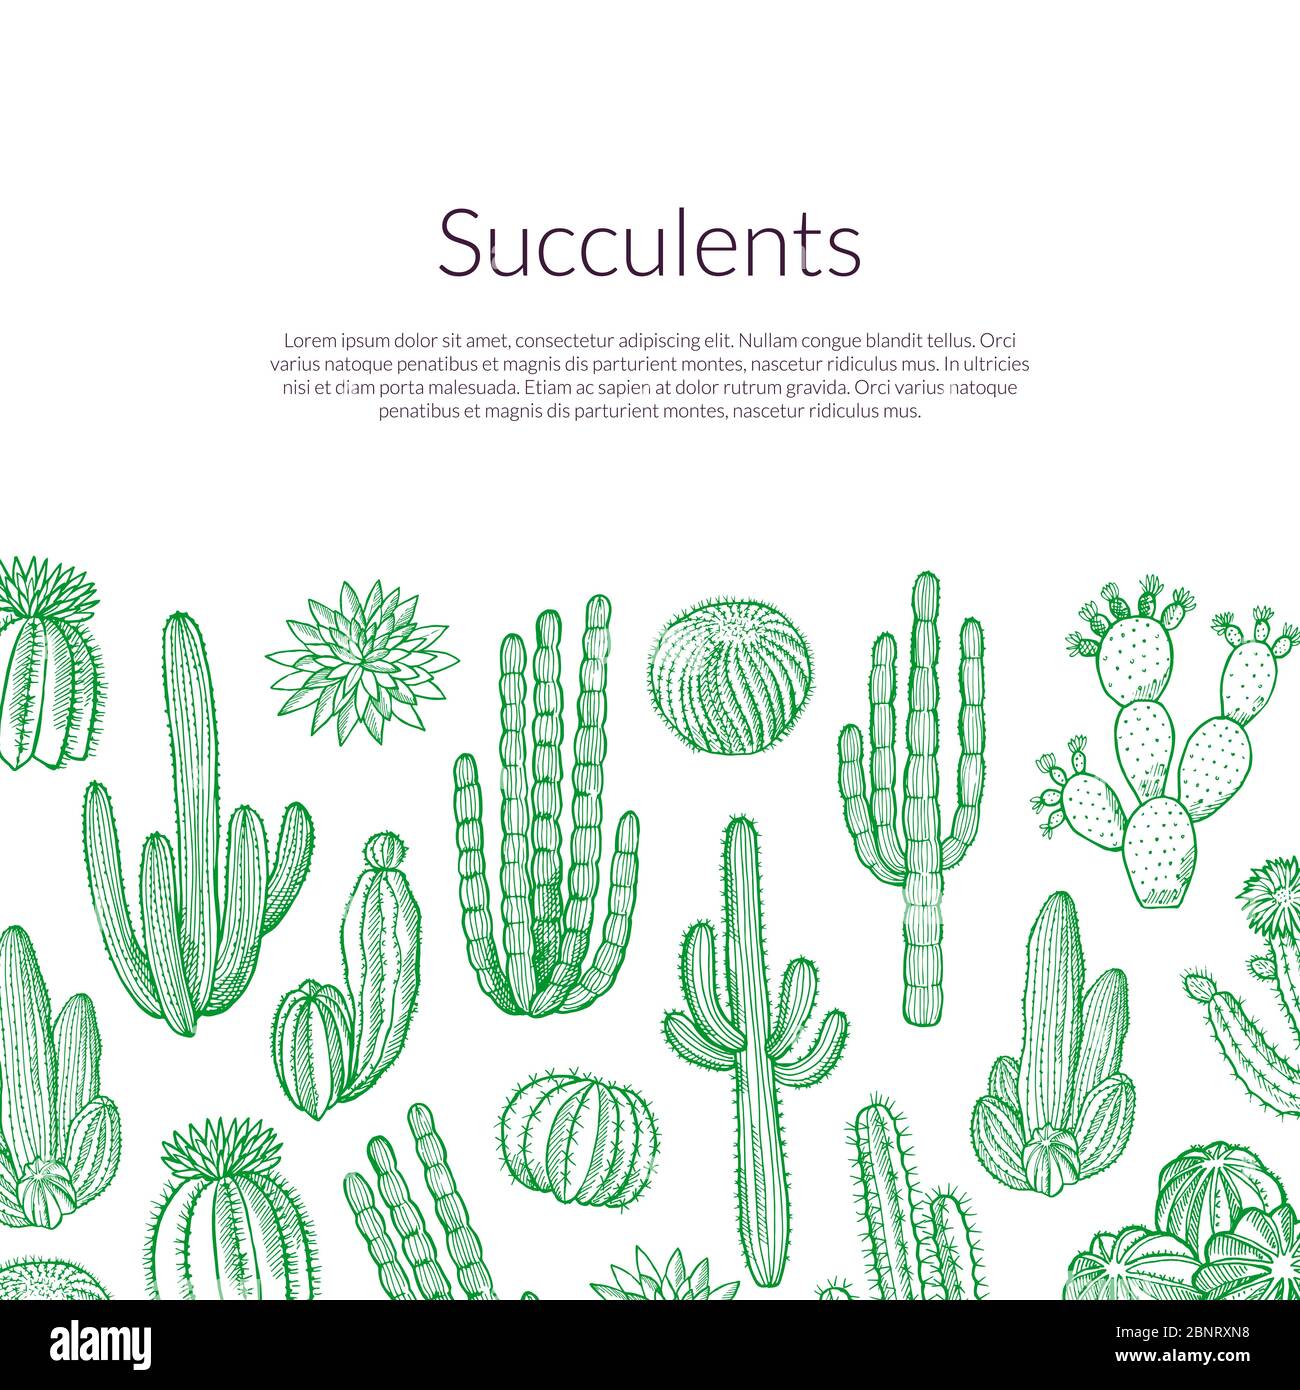 Vecteur de plantes cactus sauvages dessinées à la main avec un fond pour l'illustration de texte Illustration de Vecteur